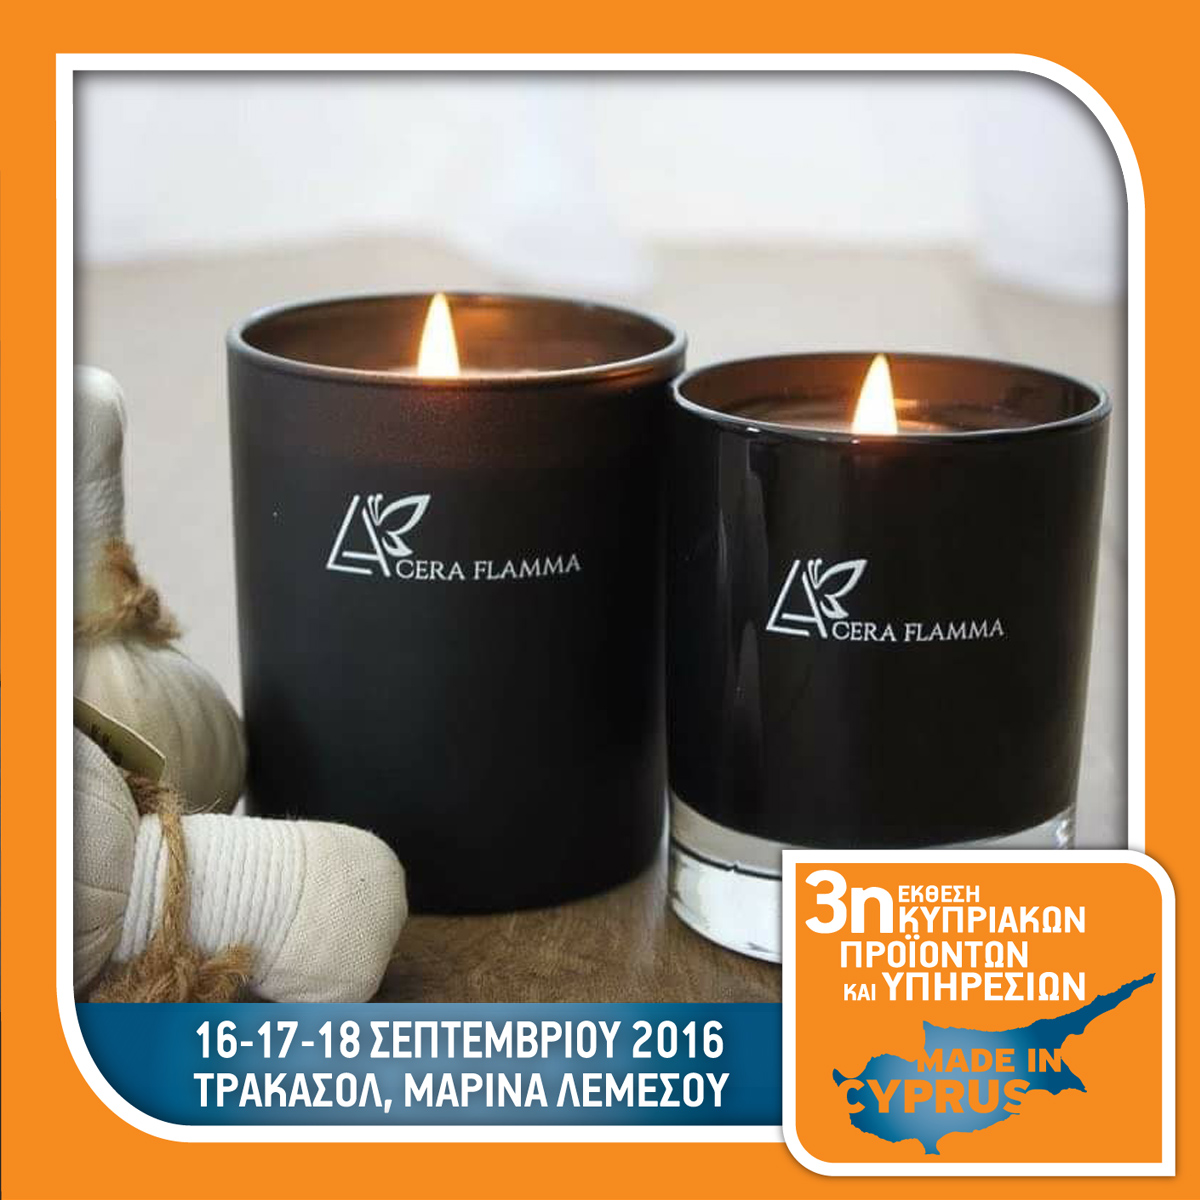 La Cera Flamma Aromatic Candles - Stand No 50